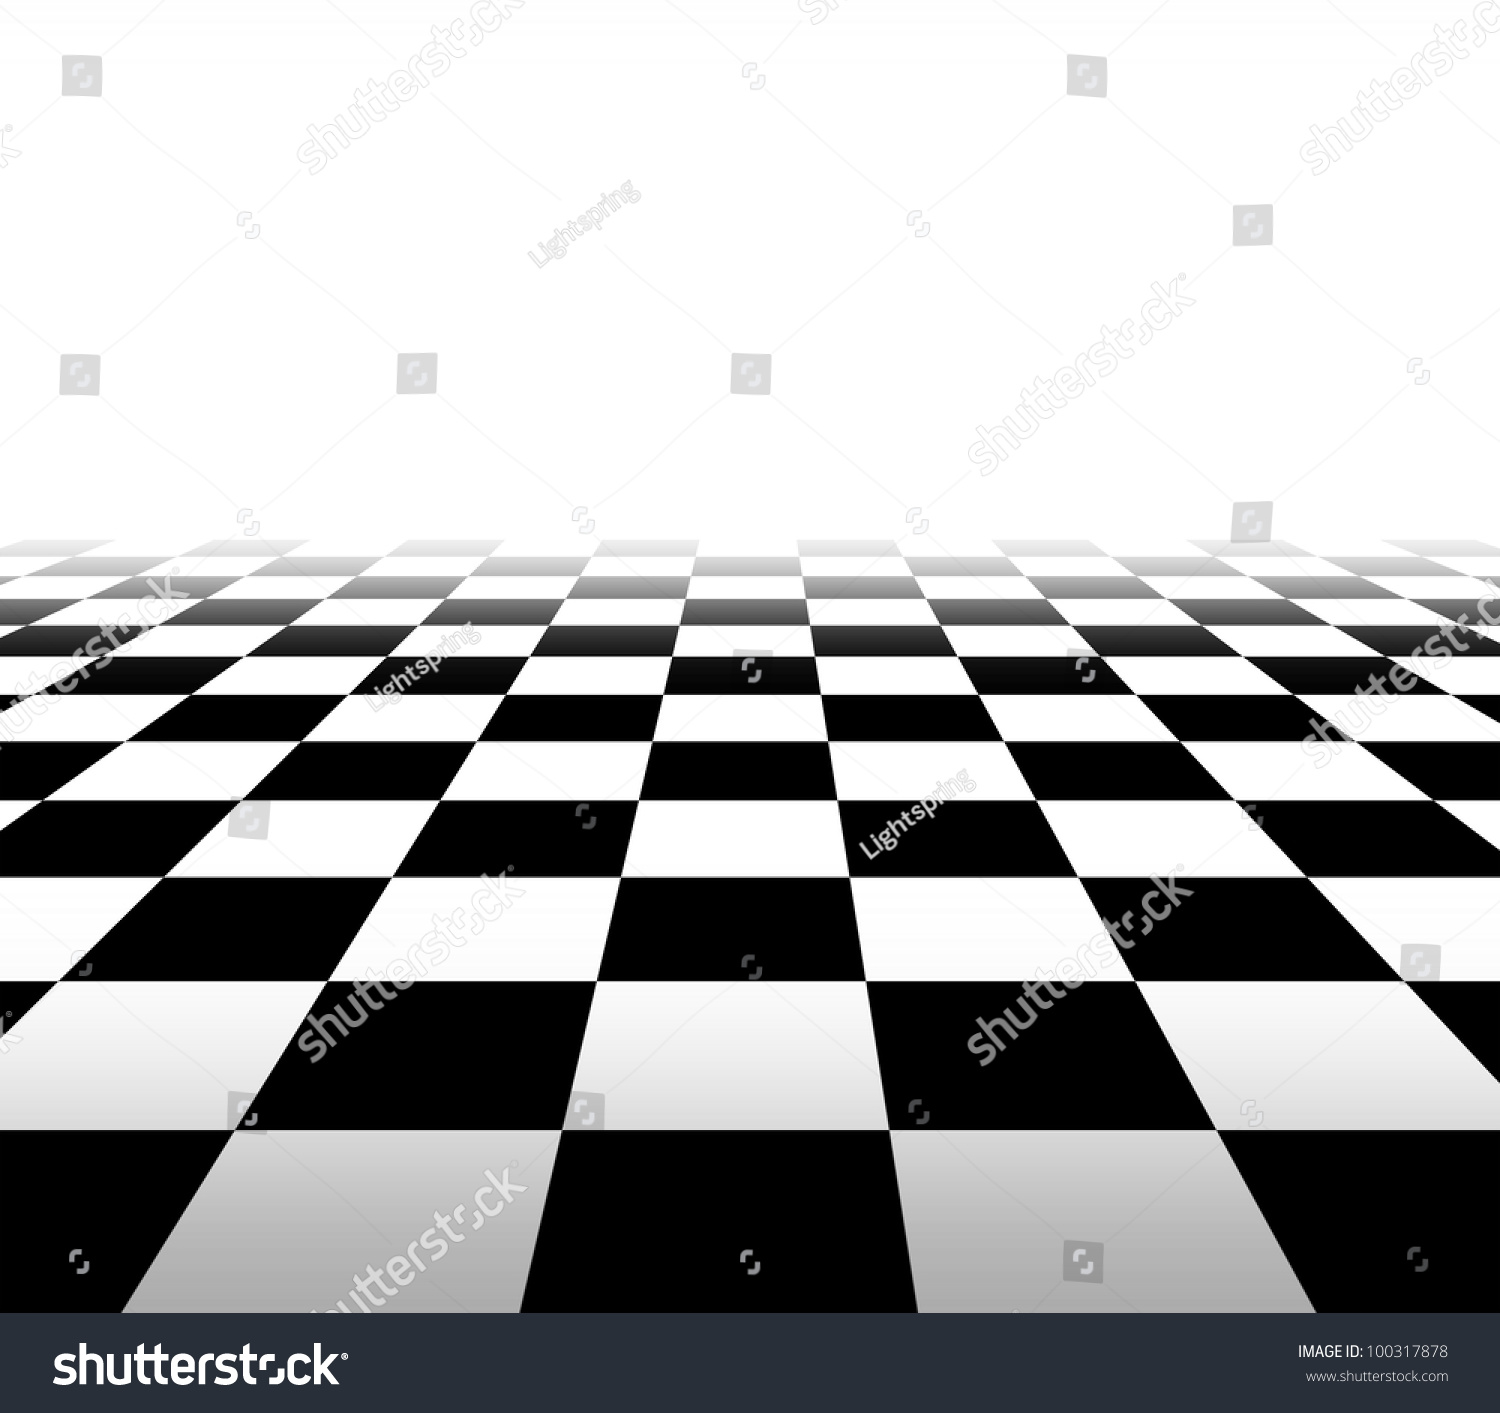 шахматная текстура квадраты скачать